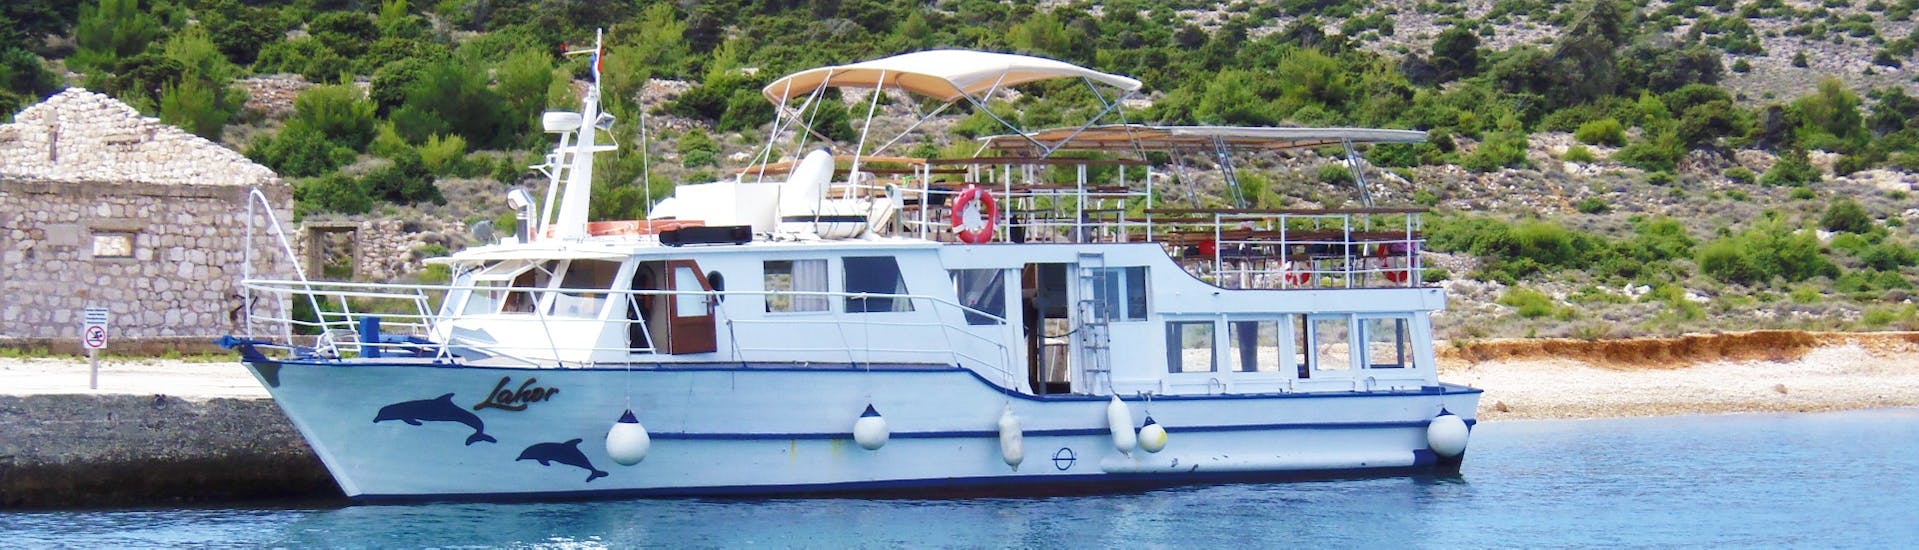 La gita in barca da Punat all'isola di Plavnik è pronta a partire.